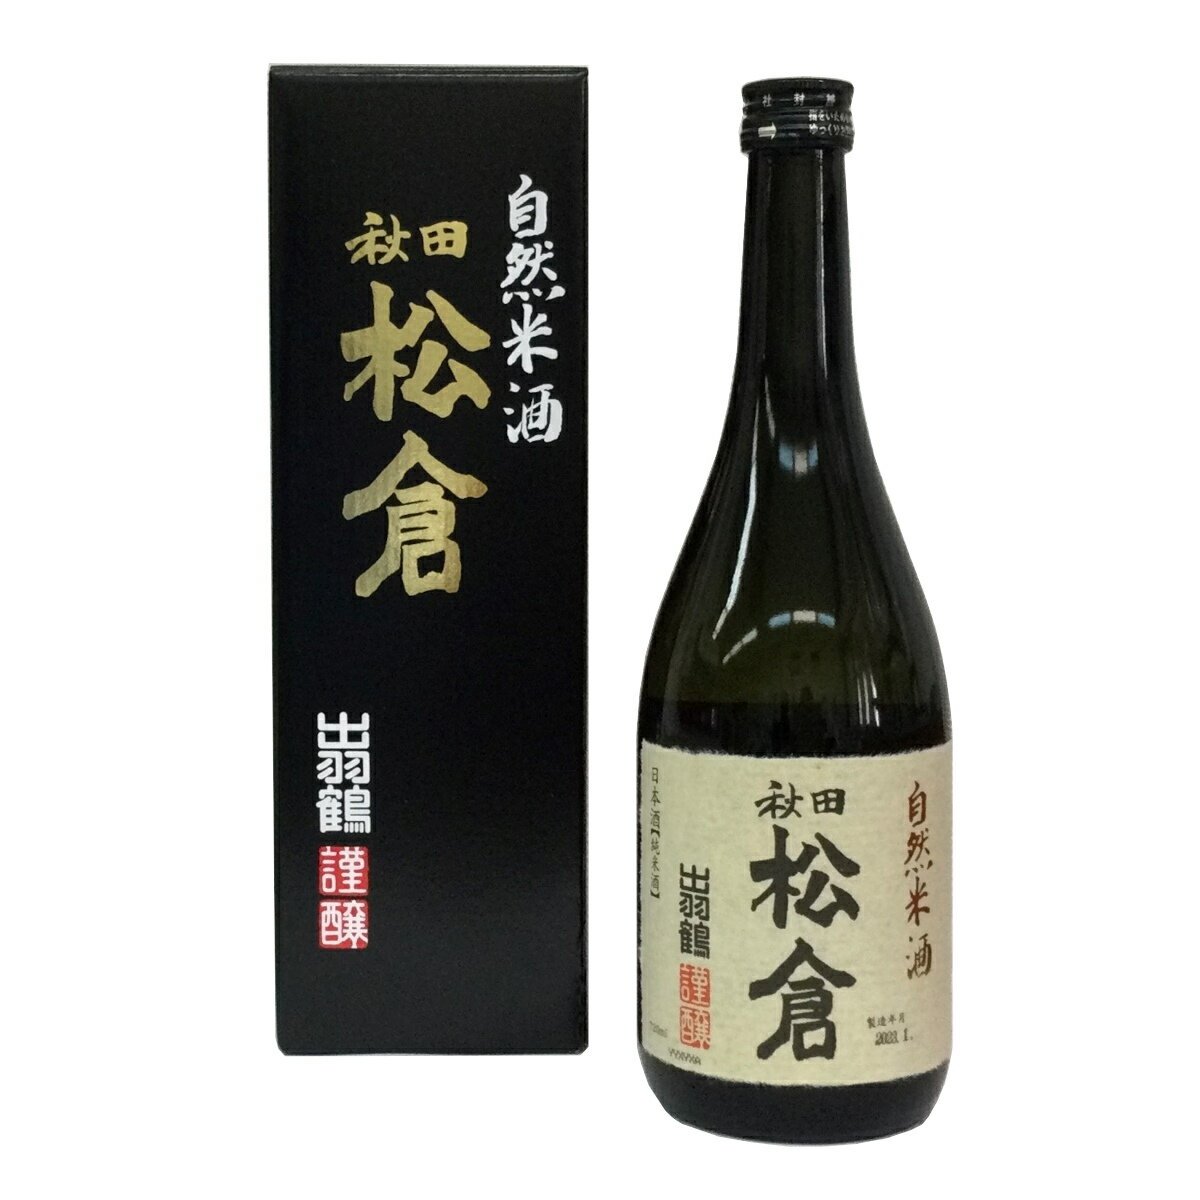 秋田 出羽鶴 自然米酒 松倉 720ml 特別純米酒